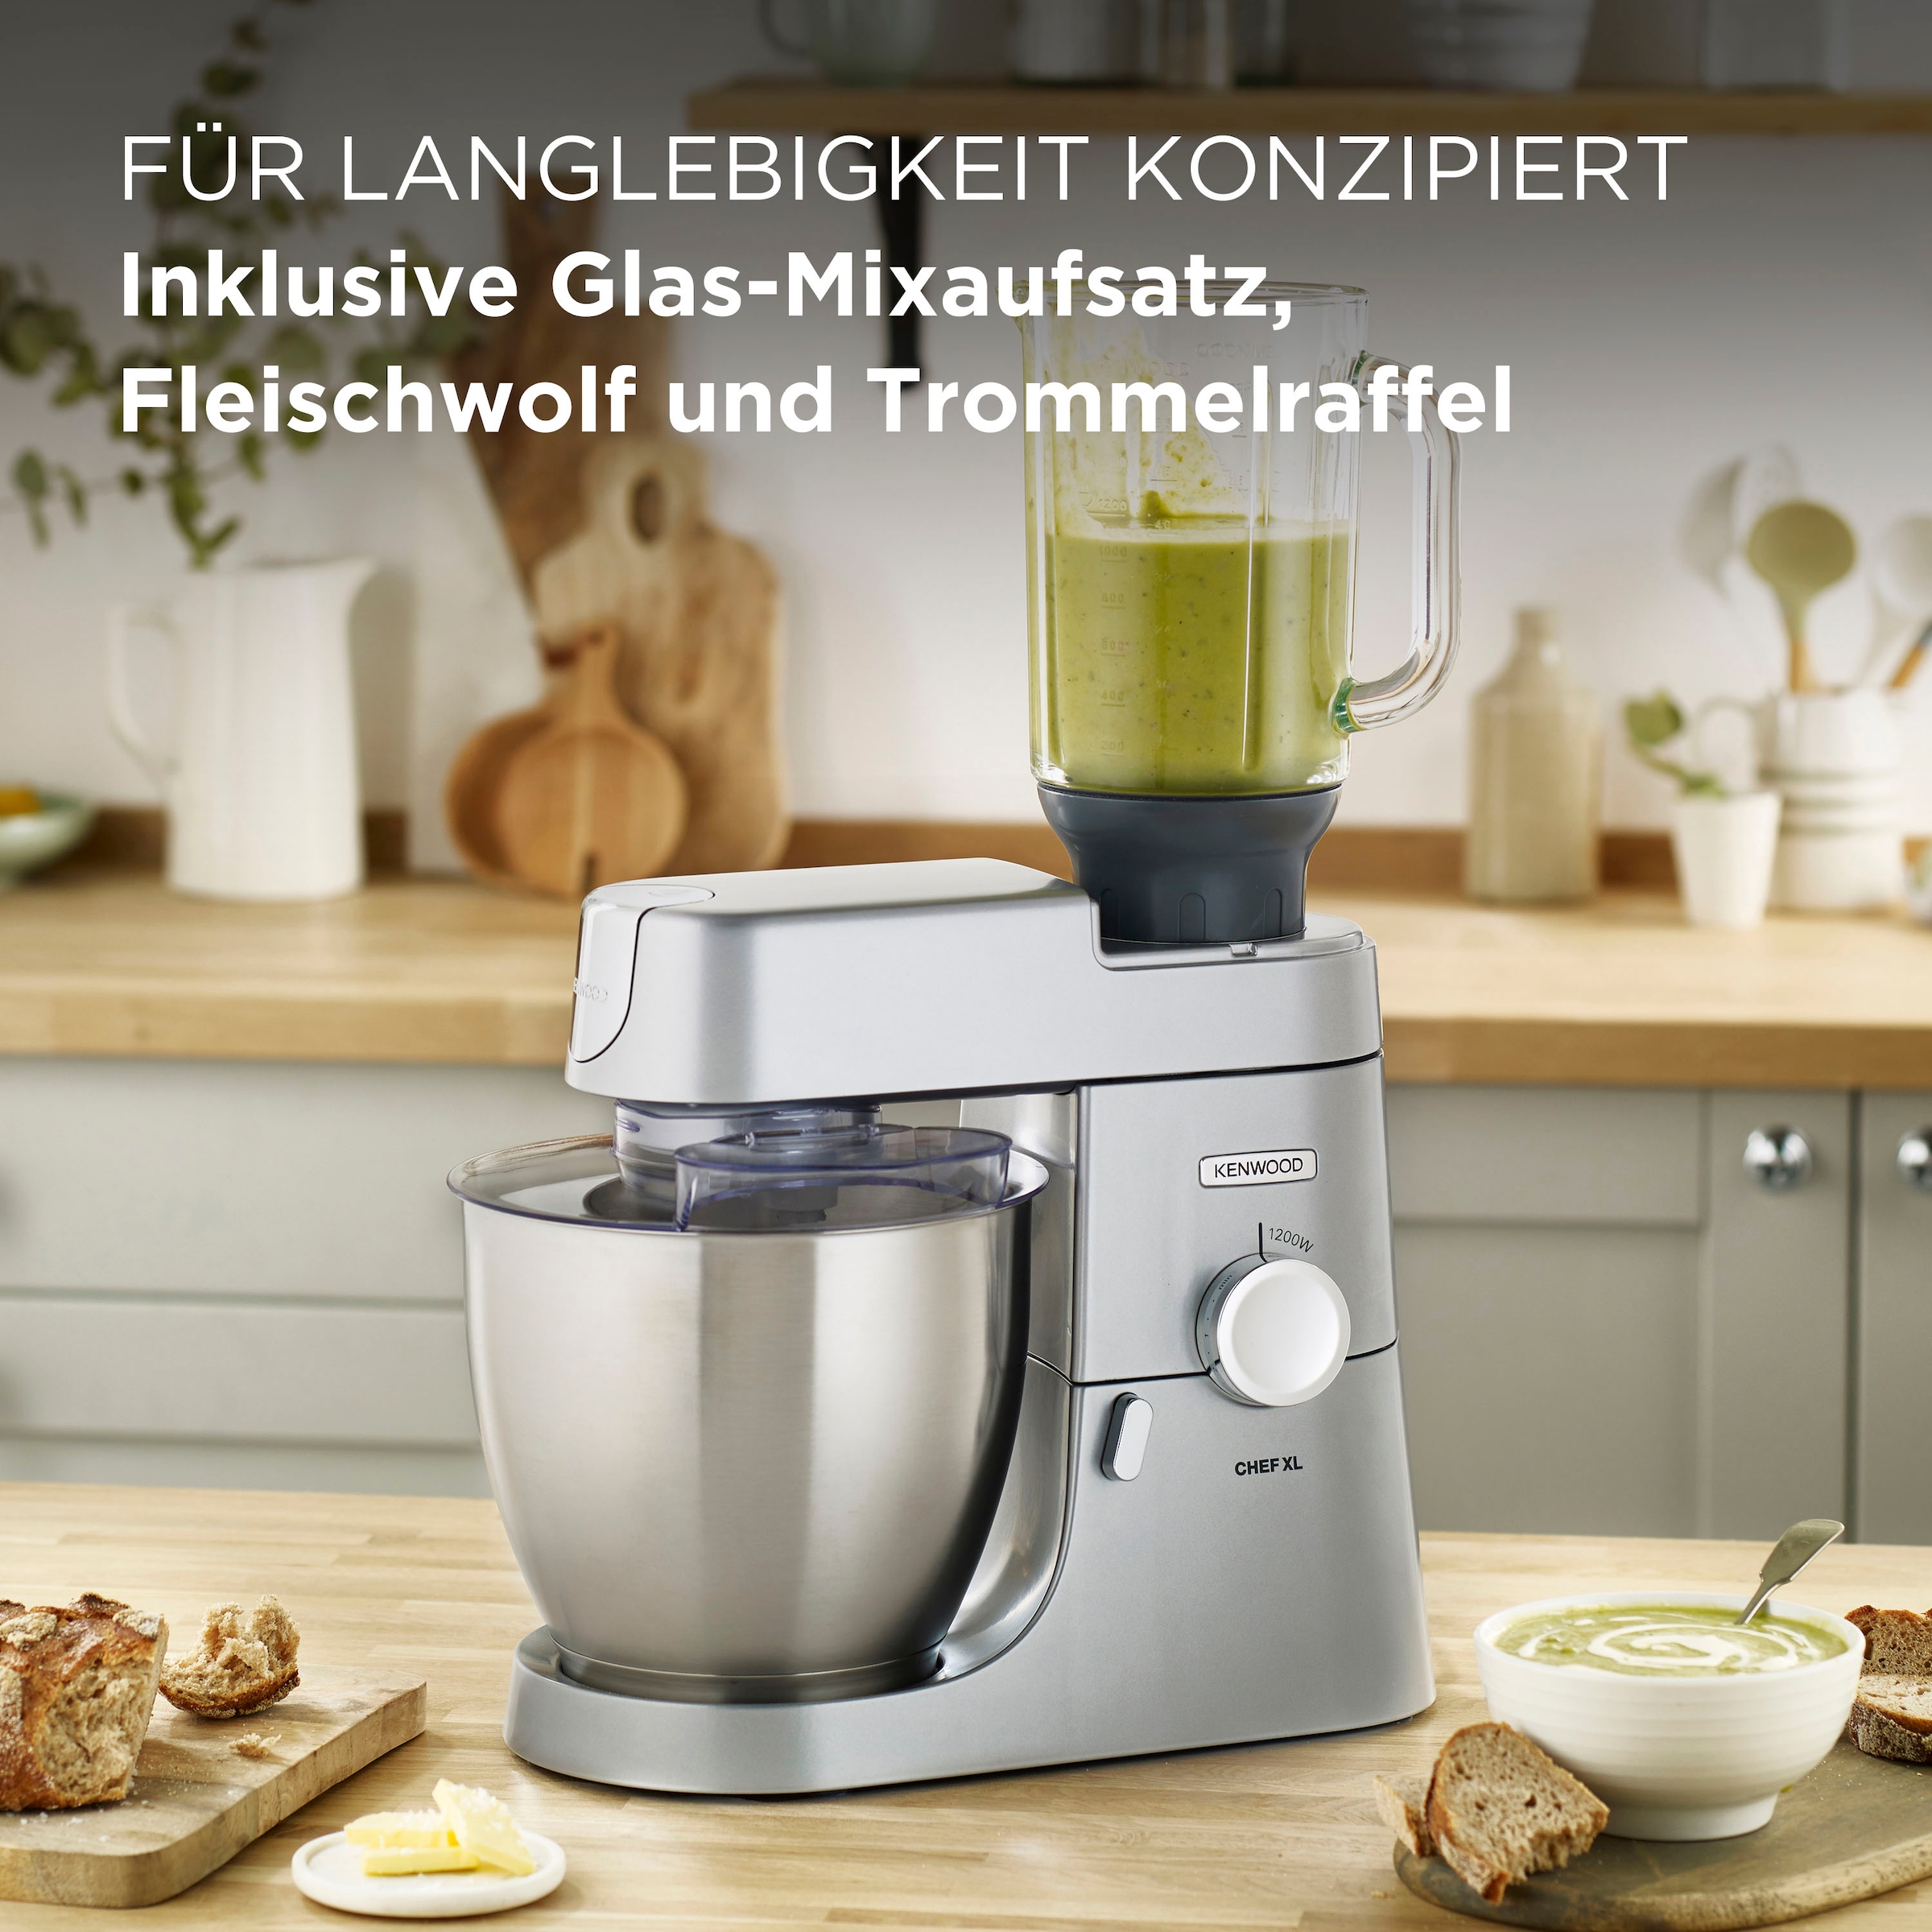 KENWOOD Küchenmaschine »Chef XL KVL4220S«, und inkl. 6,7 Fleischwolf bestellen Trommelraffel Schüssel, Mixaufsatz, l online